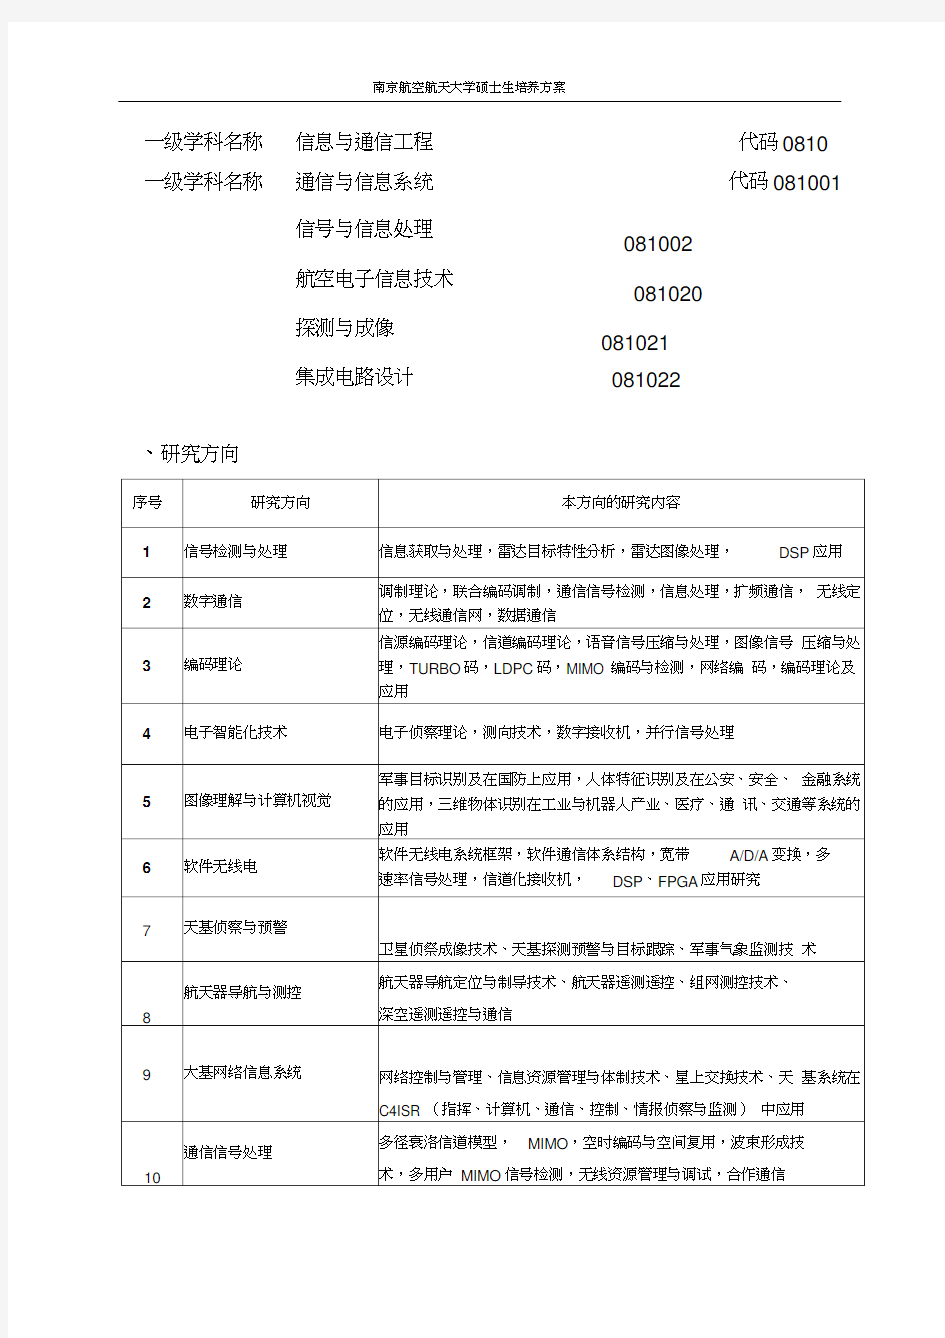 二级学科名称通信与信息系统代码08100南京航空航天大学电子